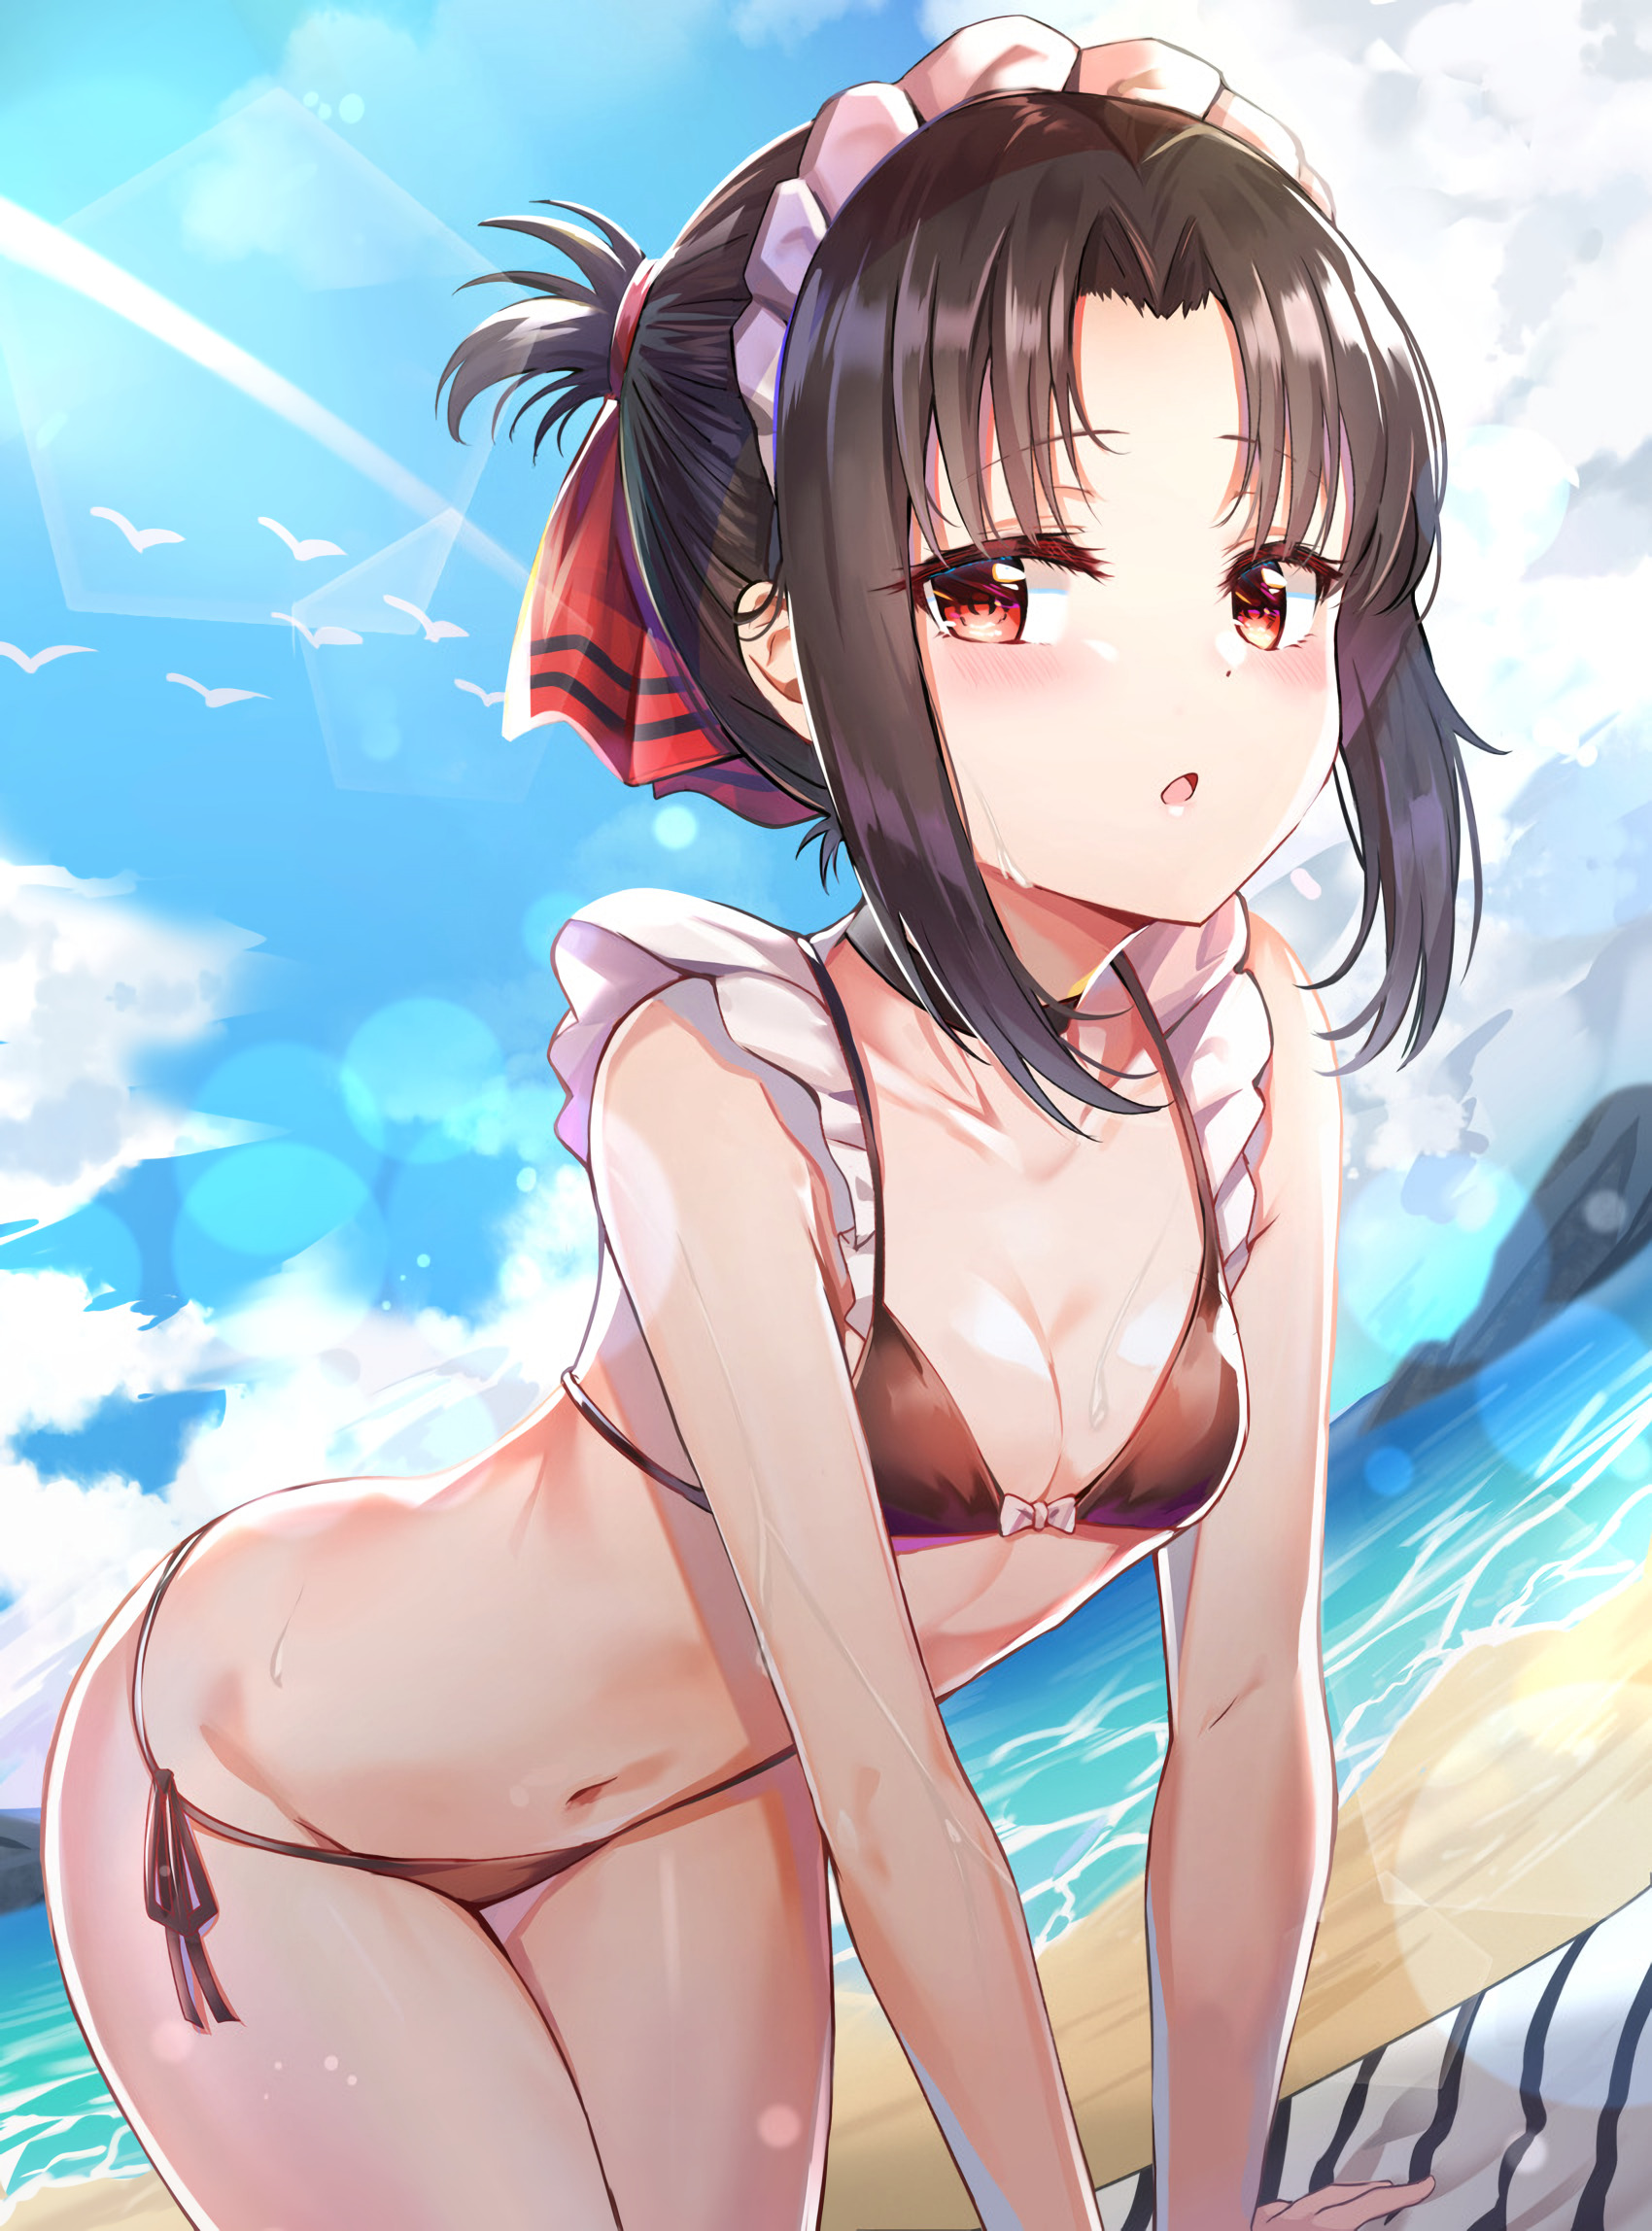 Anime 1700x2296 anime girls anime Kaguya Shinomiya Kaguya-Sama: Love is War bikini small boobs red eyes clouds sky bent over sand beach birds choker